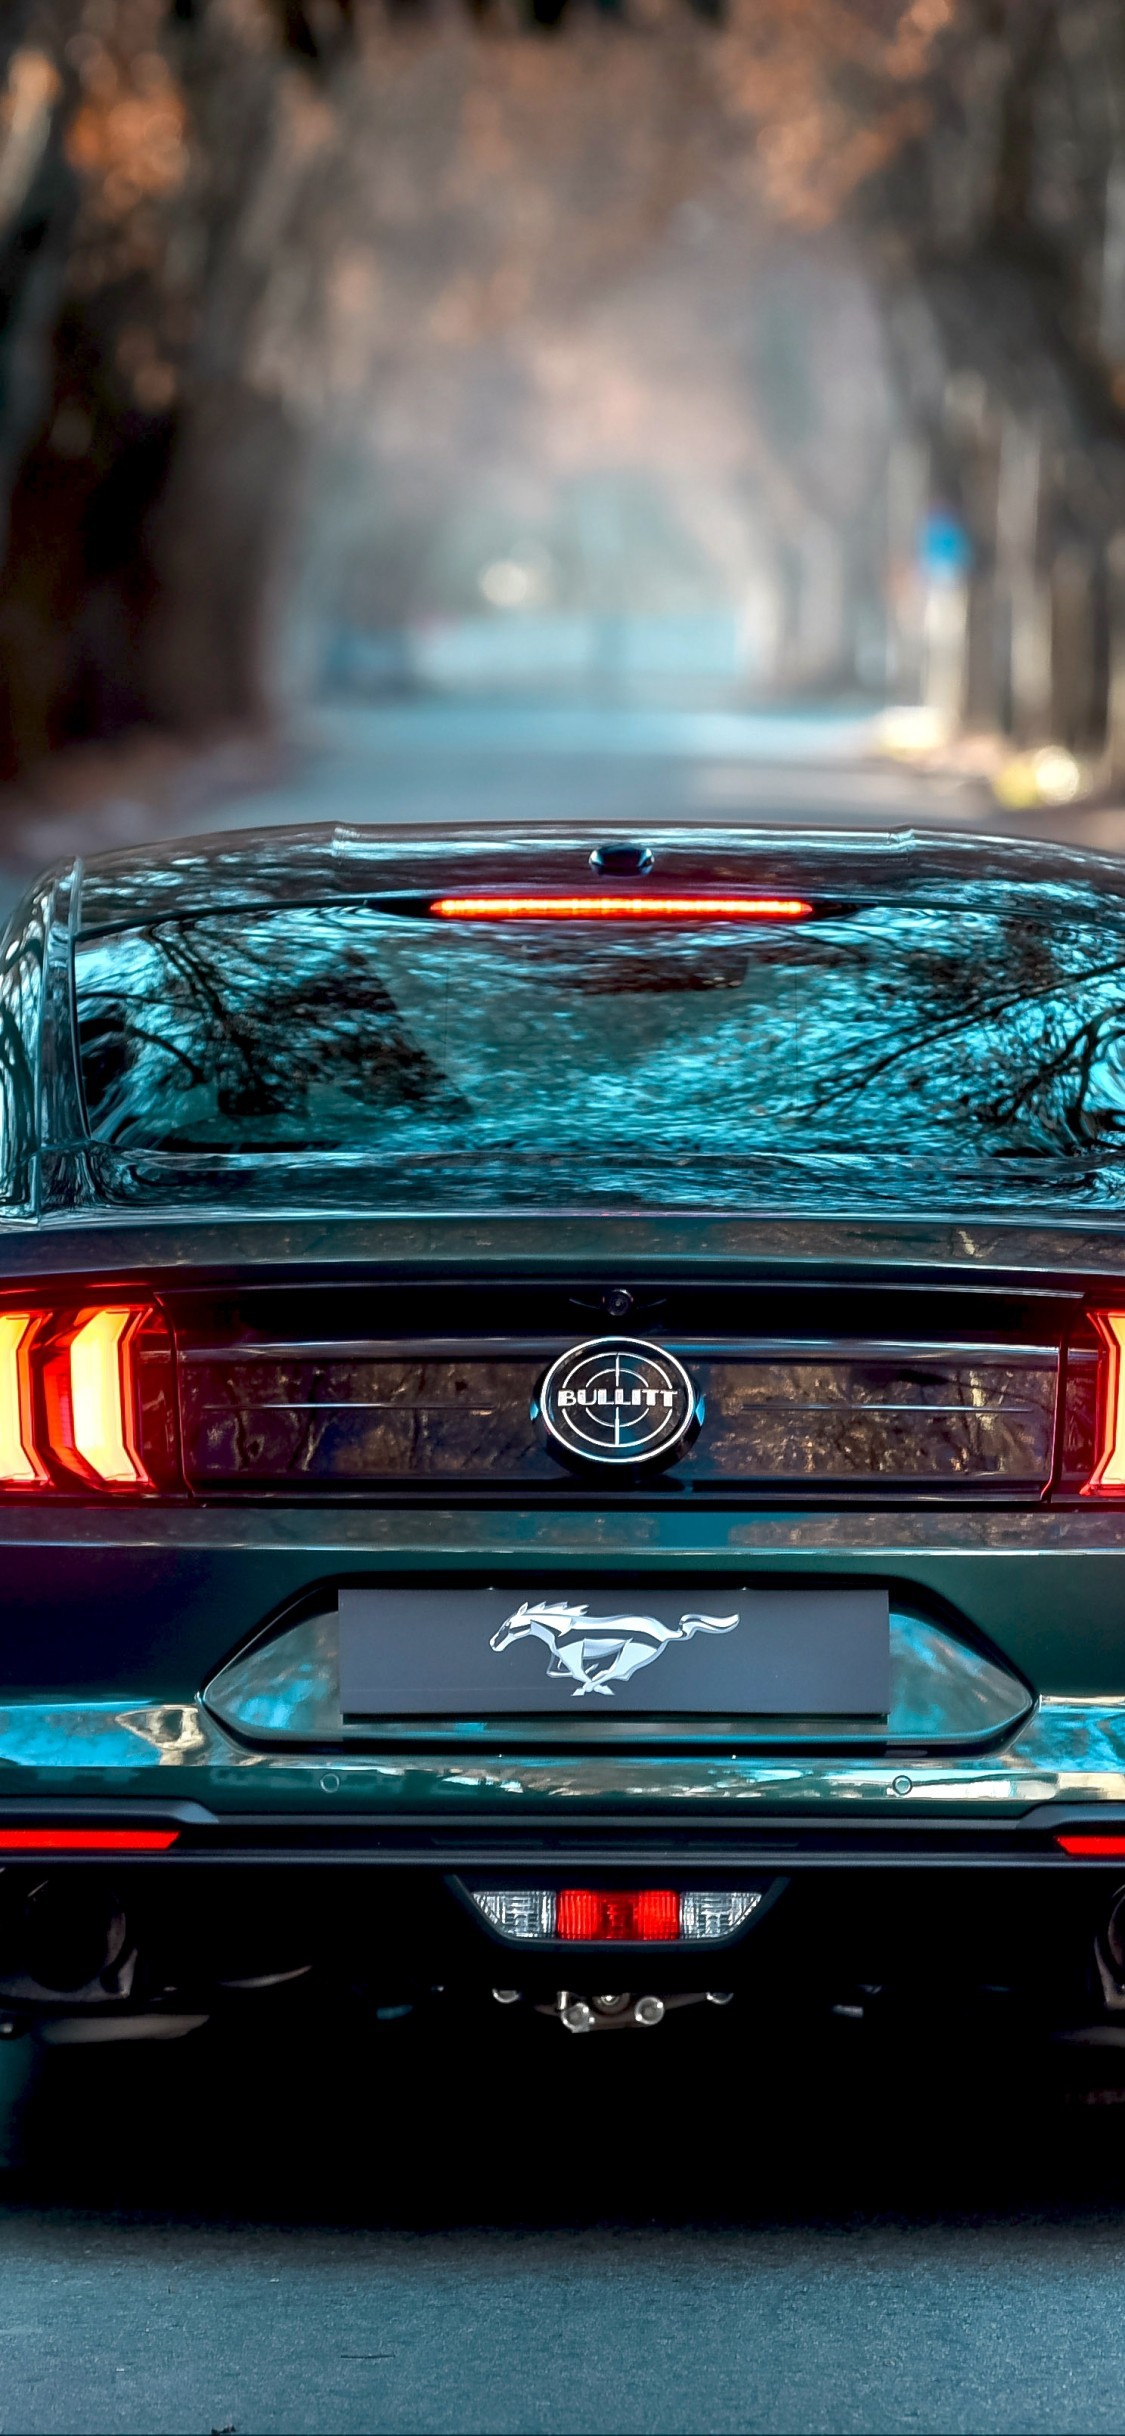 Ford Mustang Bullitt, Back View, Road, Muscle Cars Wallpaper 4k For Mobile